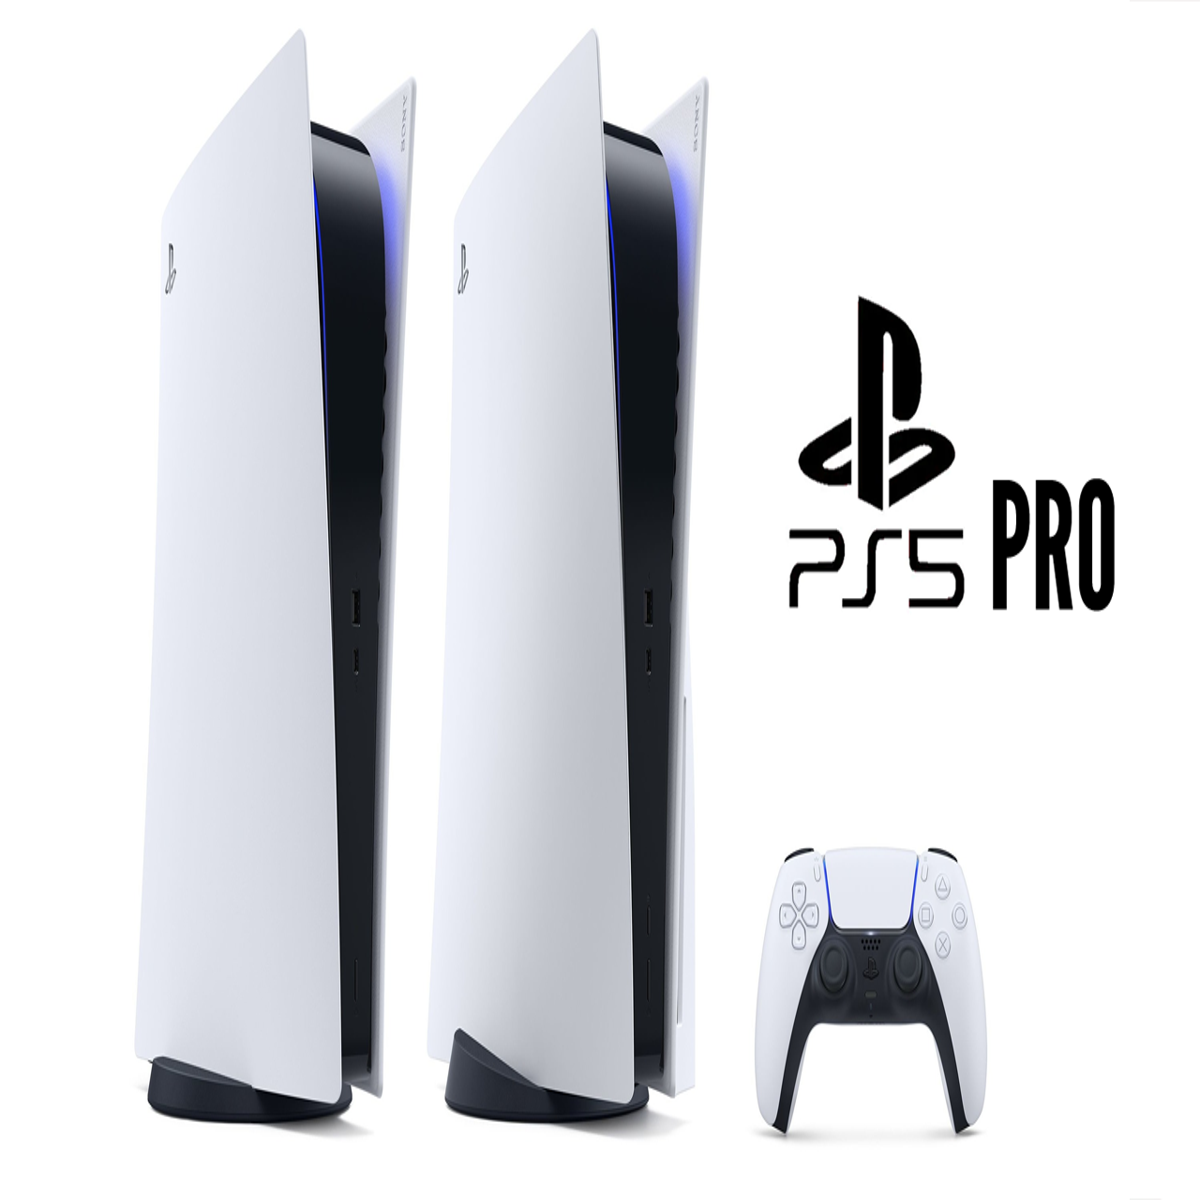 PS5 Pro estaria em desenvolvimento e previsto para 2024